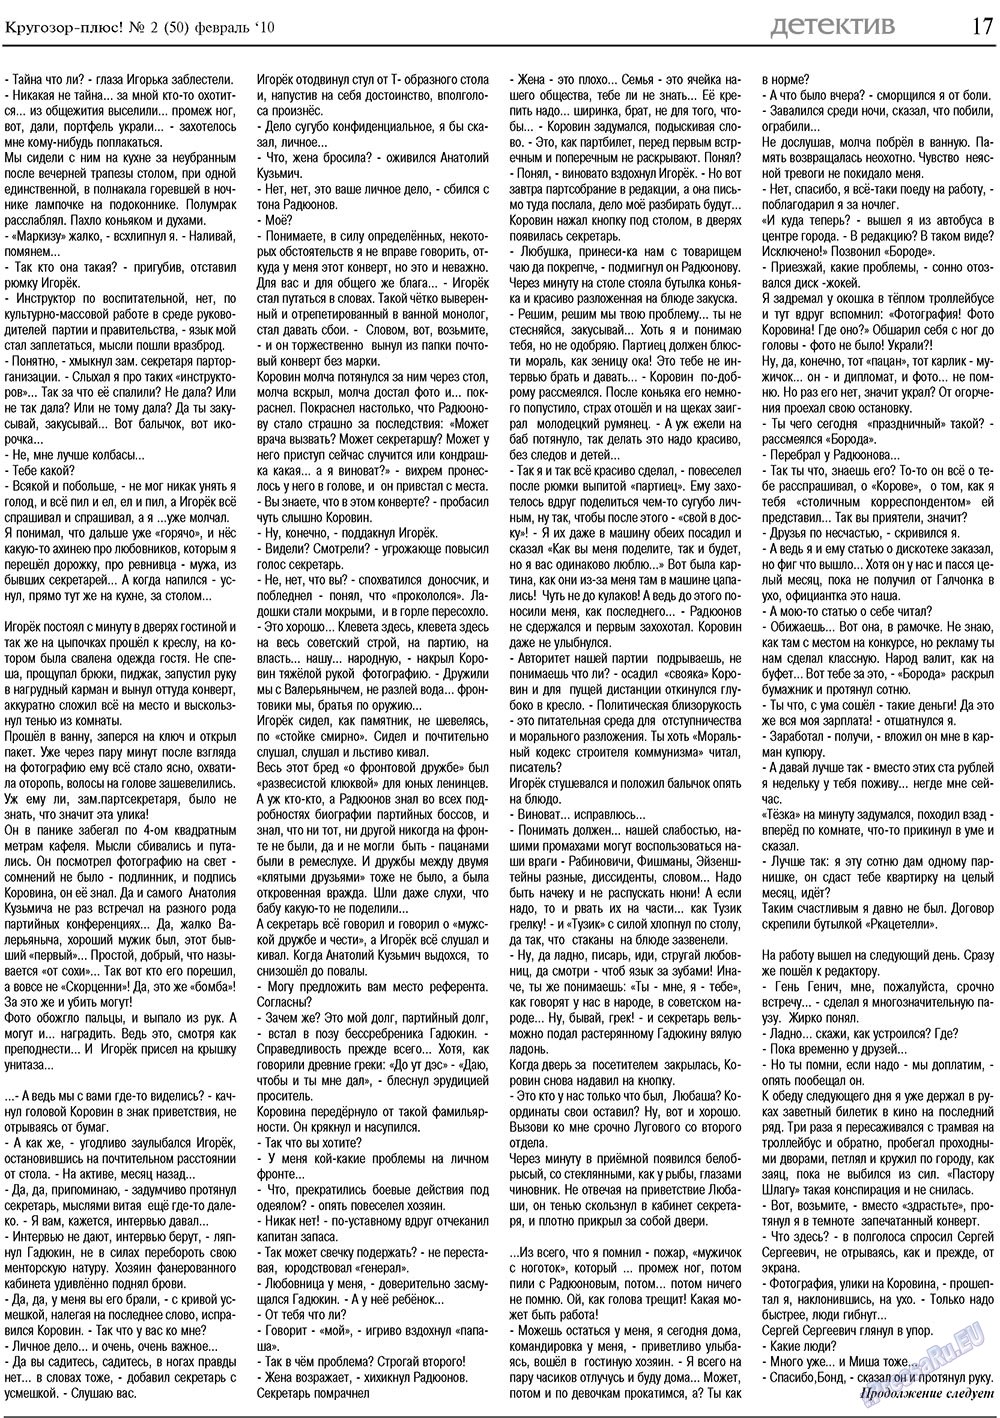 Кругозор плюс!, газета. 2010 №2 стр.17